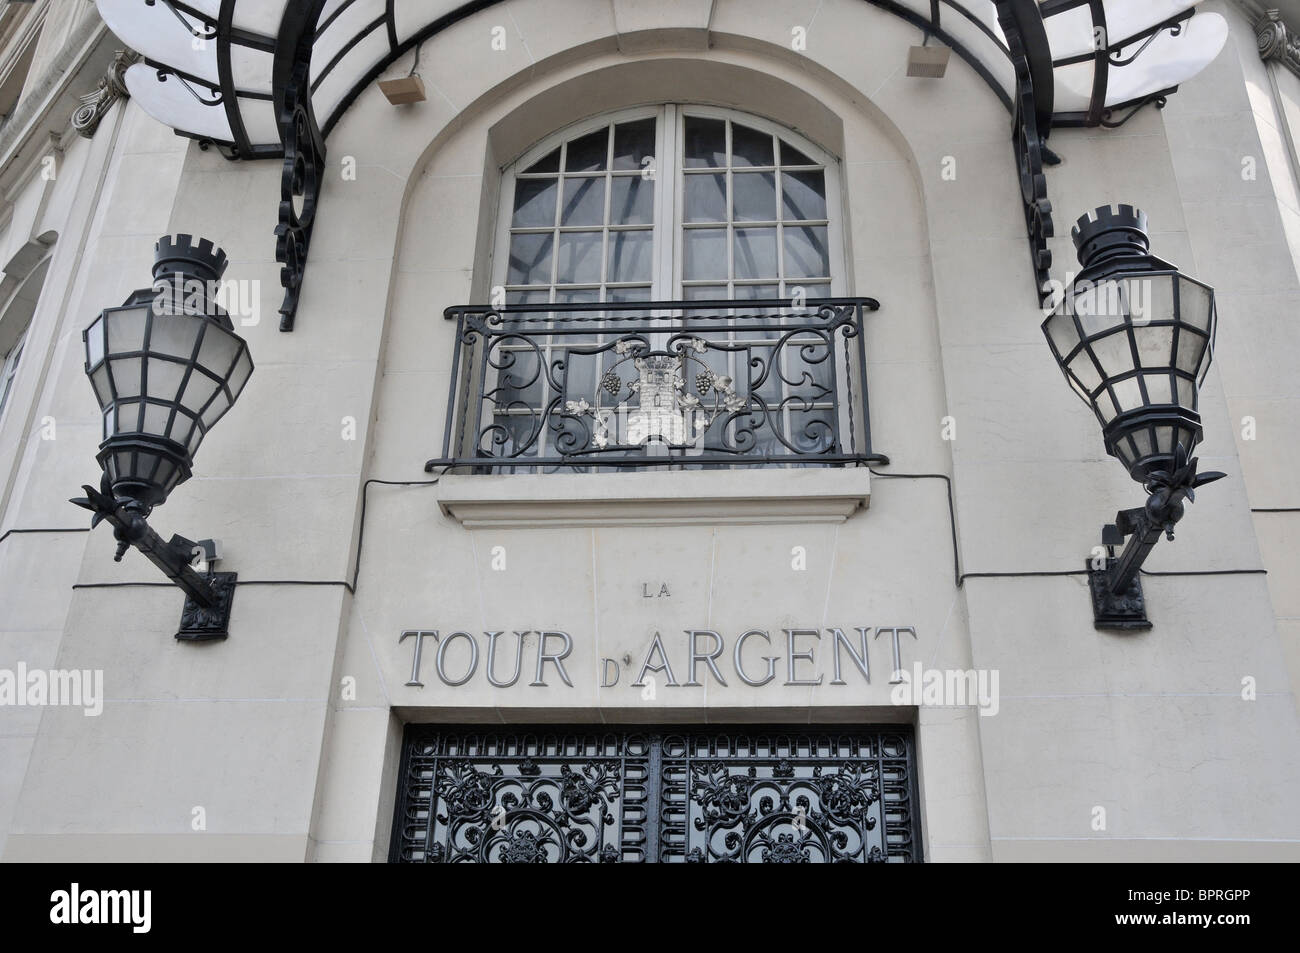 La Tour d'argent, restaurant, Paris France Banque D'Images